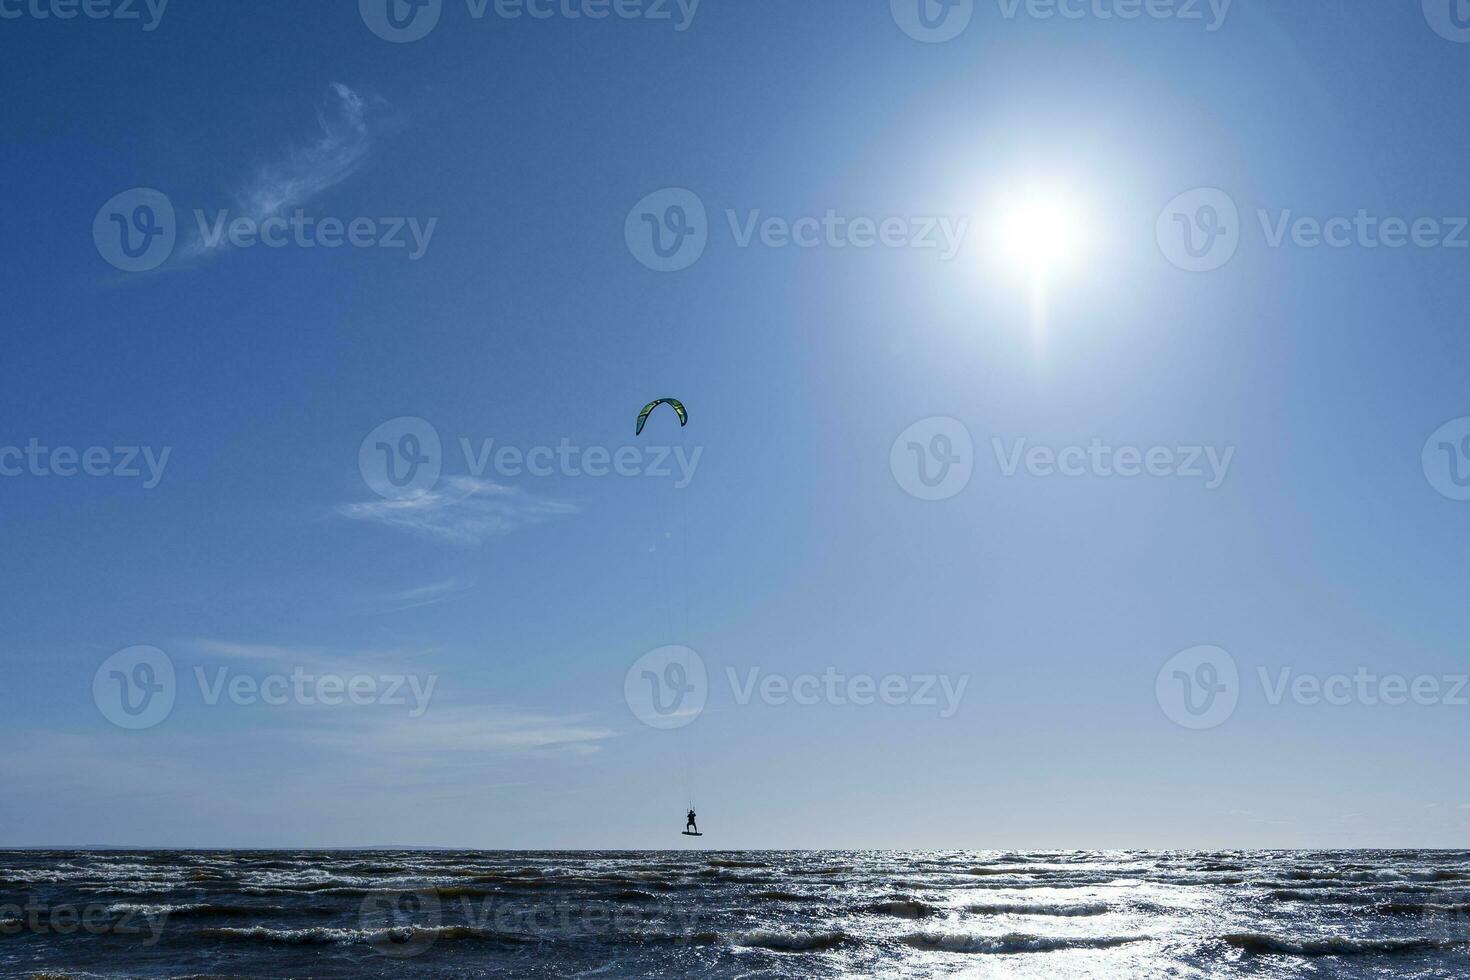 kite surf à mer tandis que performant des trucs. liberté, force, rêves. photo